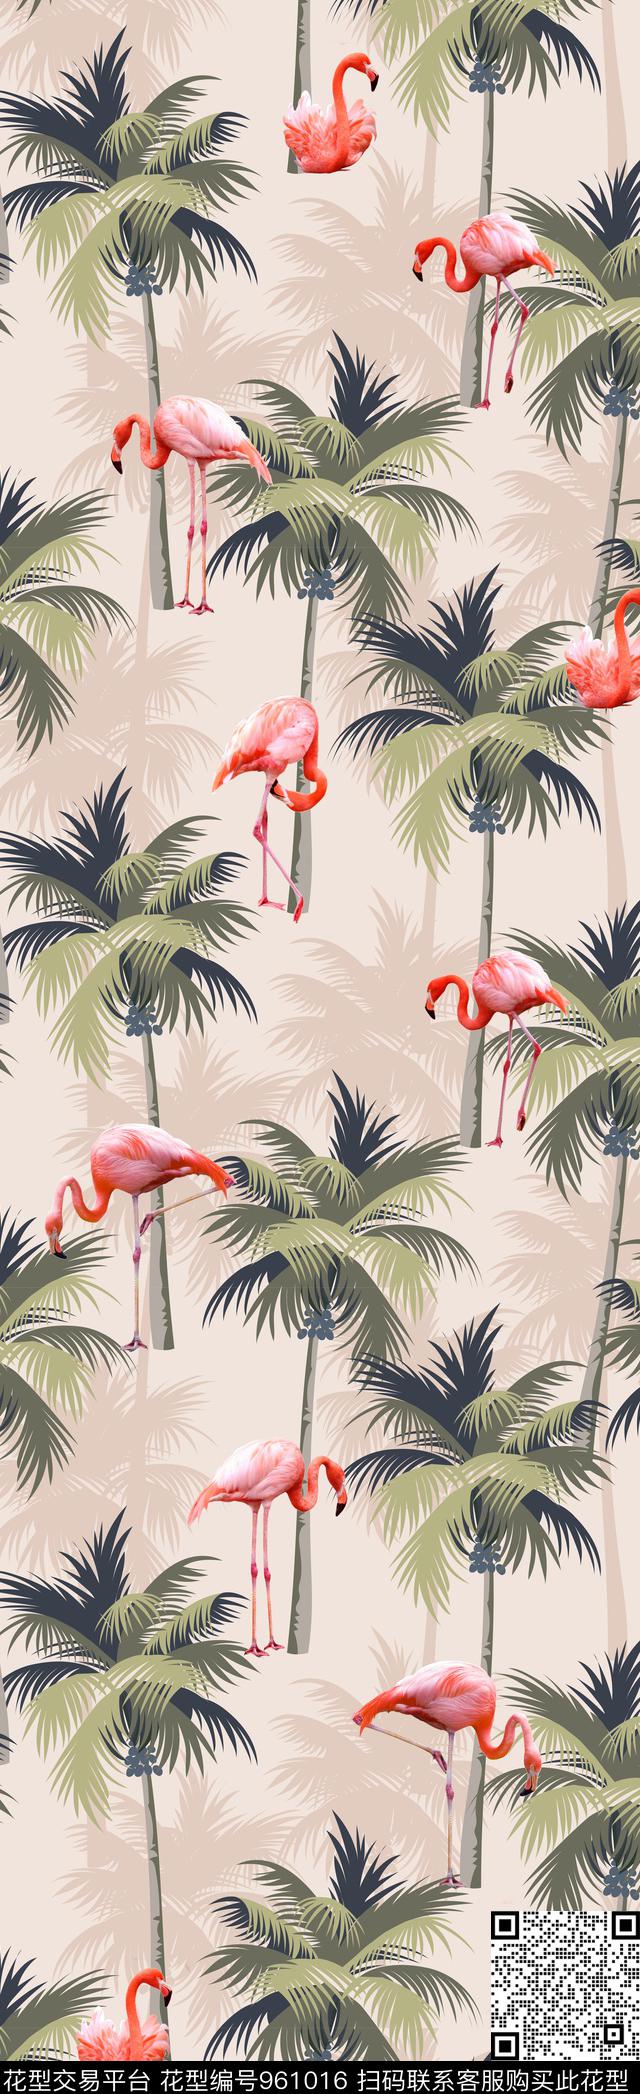 2.jpg - 961016 - 长巾 动物 椰子树 - 传统印花花型 － 长巾花型设计 － 瓦栏